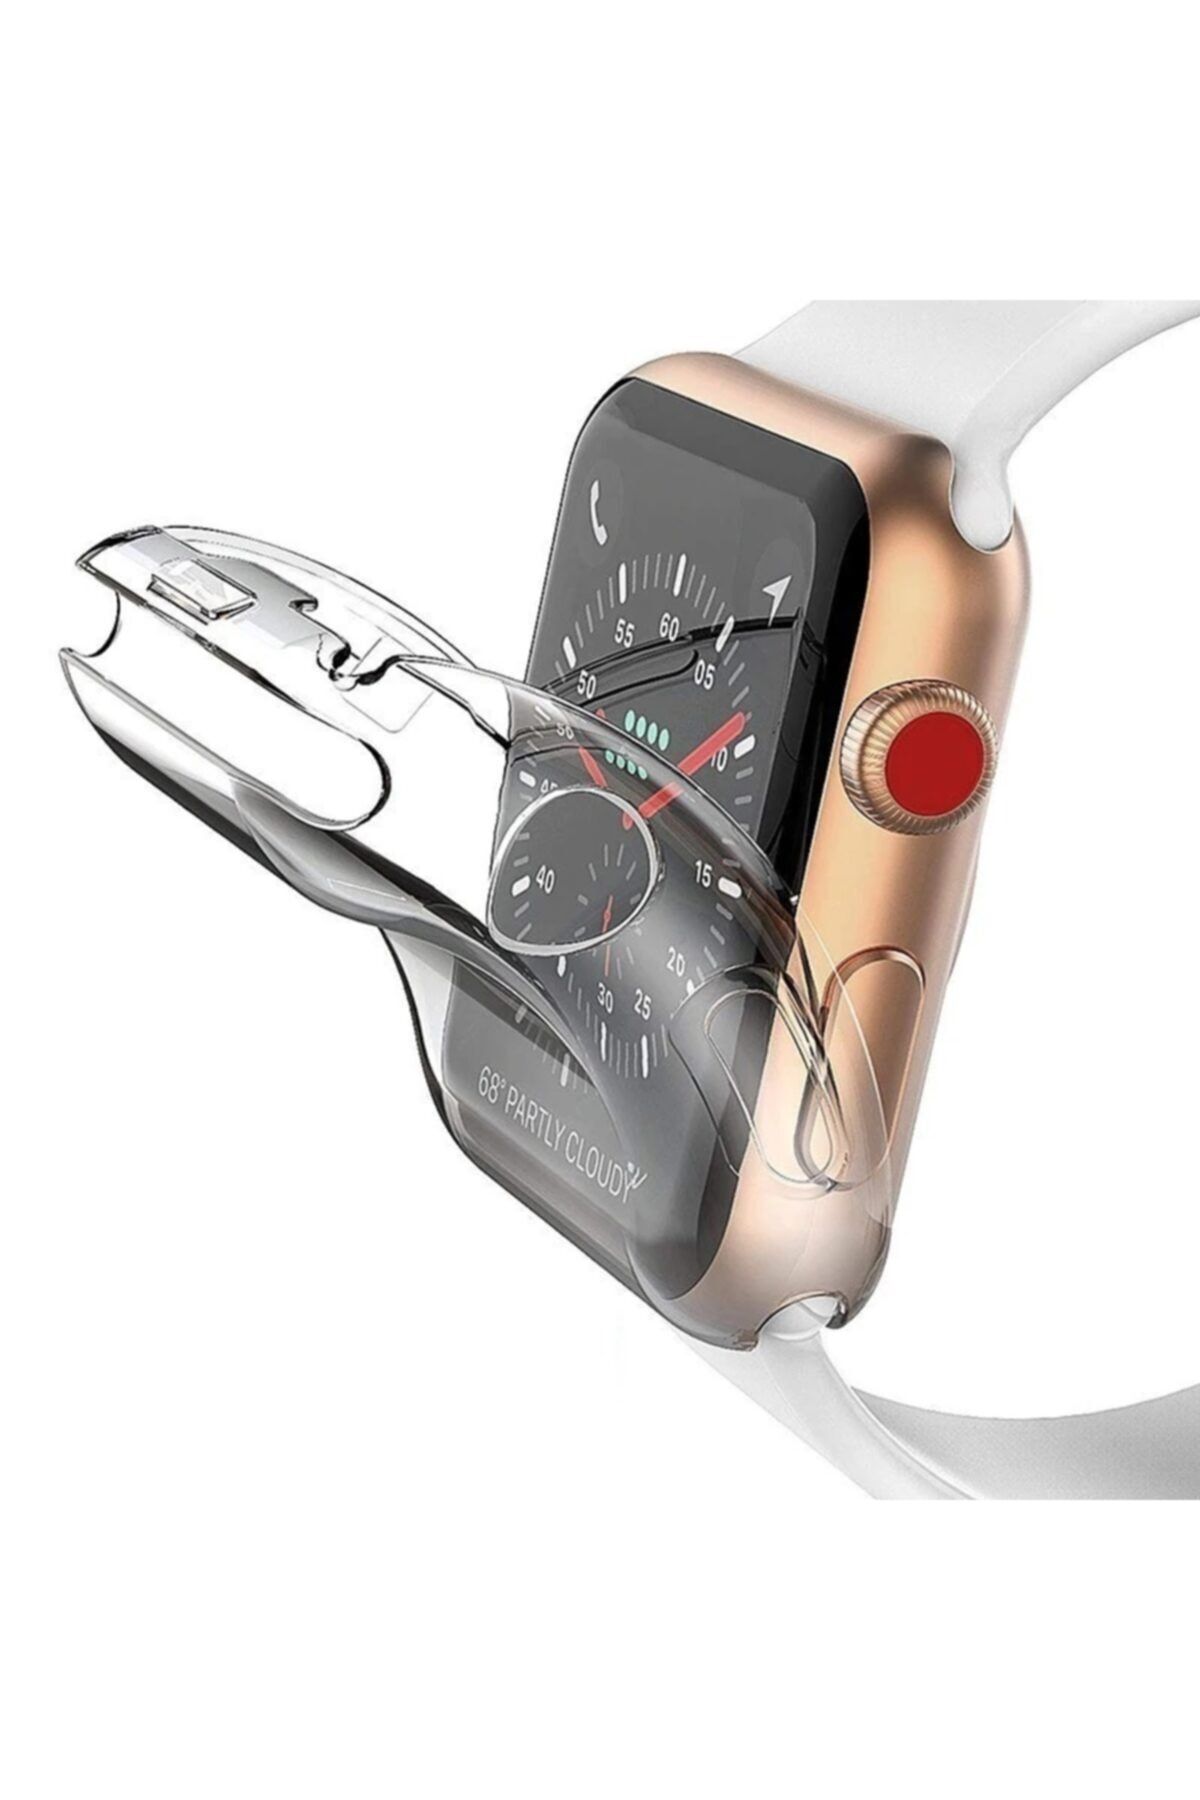 TOMMYWOLF Apple Watch Uyumlu Silikon Kılıf 38mm Watch Tam Koruma